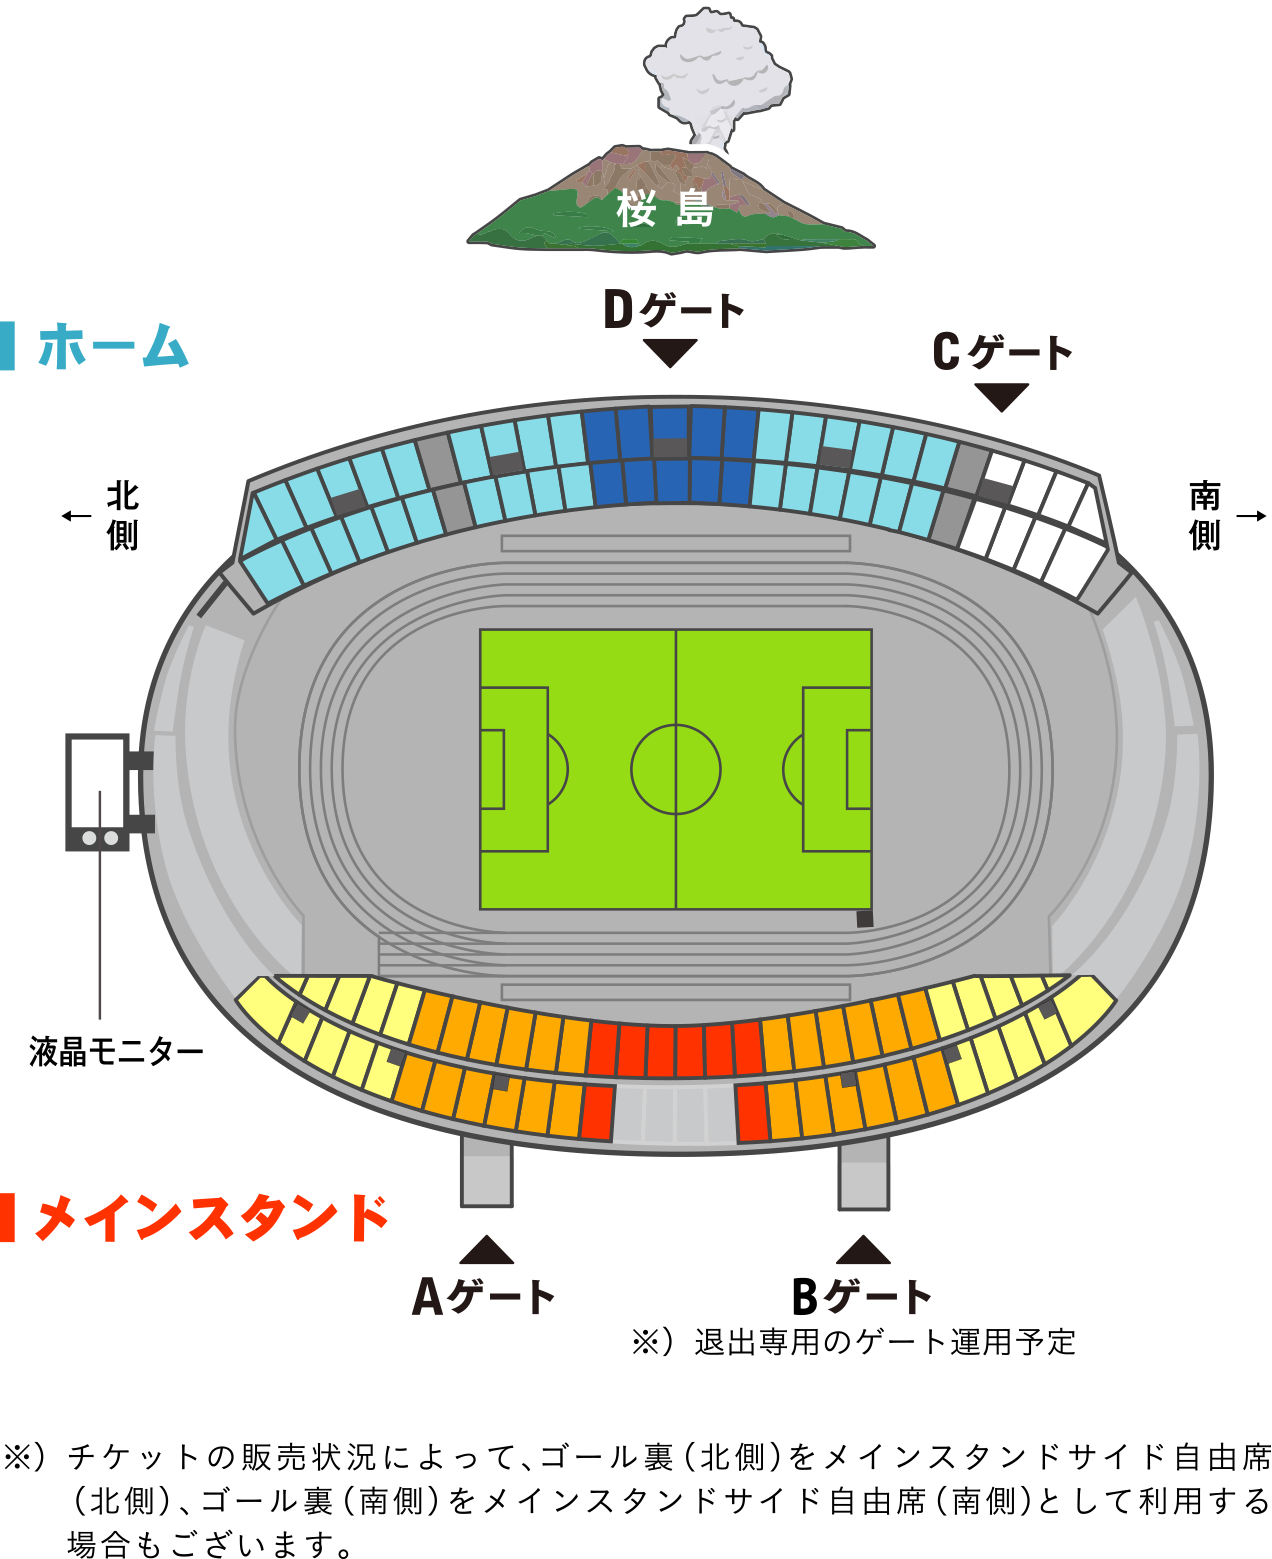 スタジアムの座席の種類